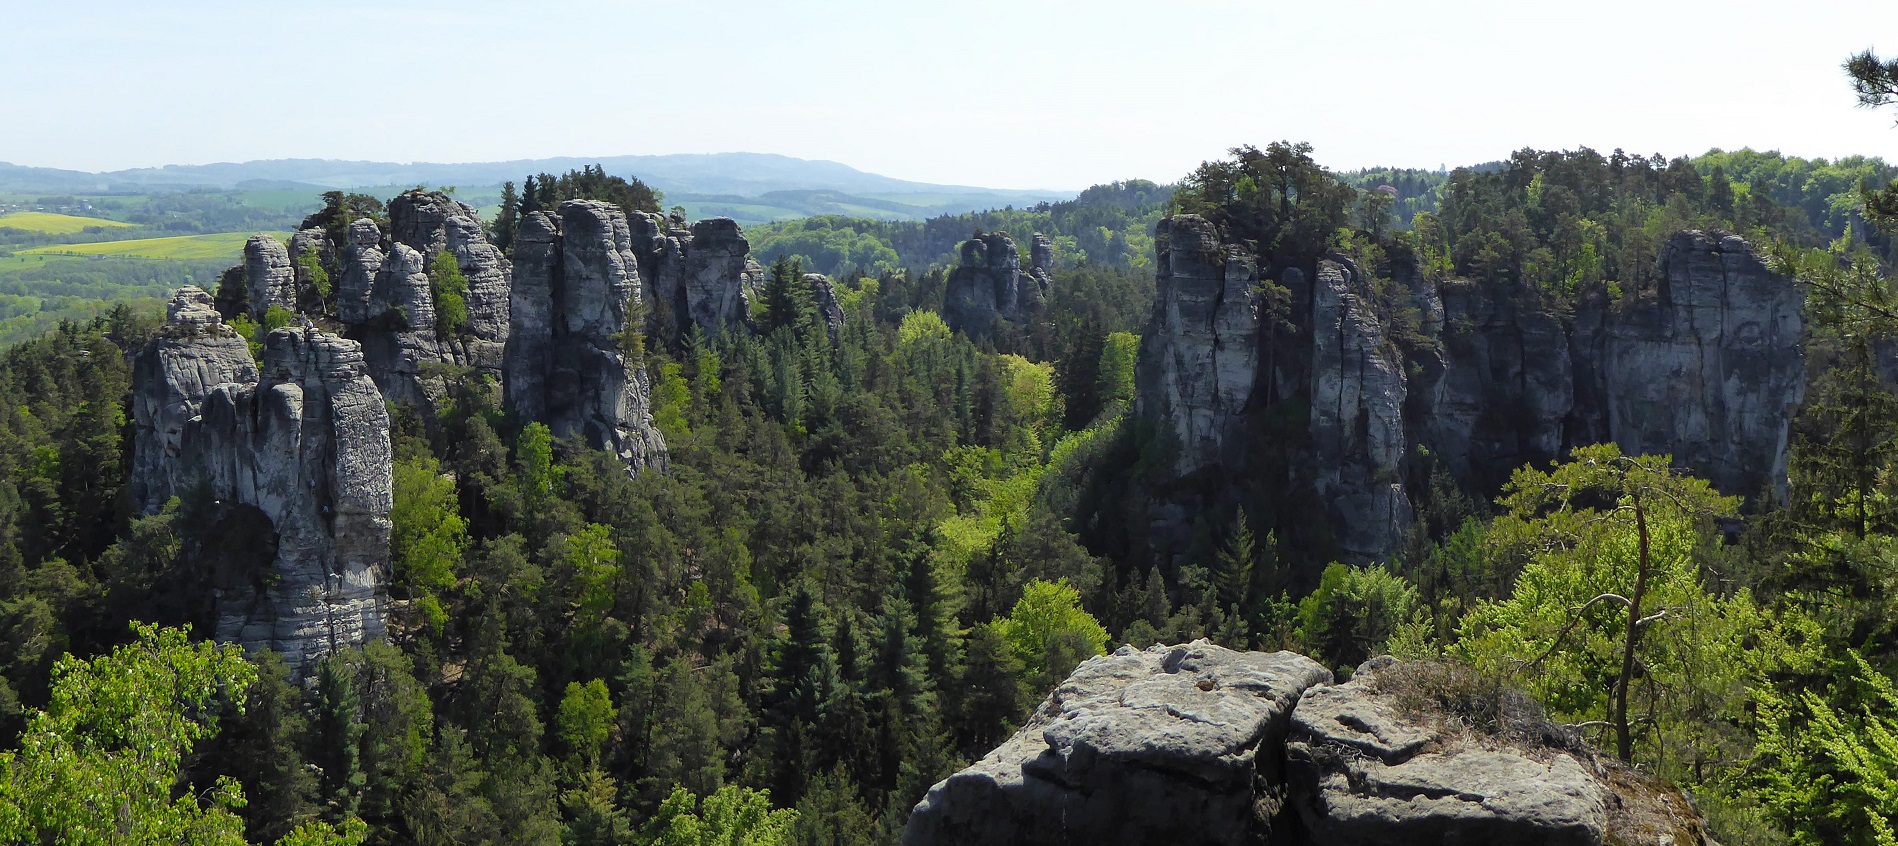 Plán péče o přírodní rezervaci Hruboskalsko uvádí konkrétní výčet předmětů ochrany EVL Podtrosecká údolí, které se na území PR vyskytují, a stanovuje vhodnou péči o ně. Foto Tereza Kušnírová